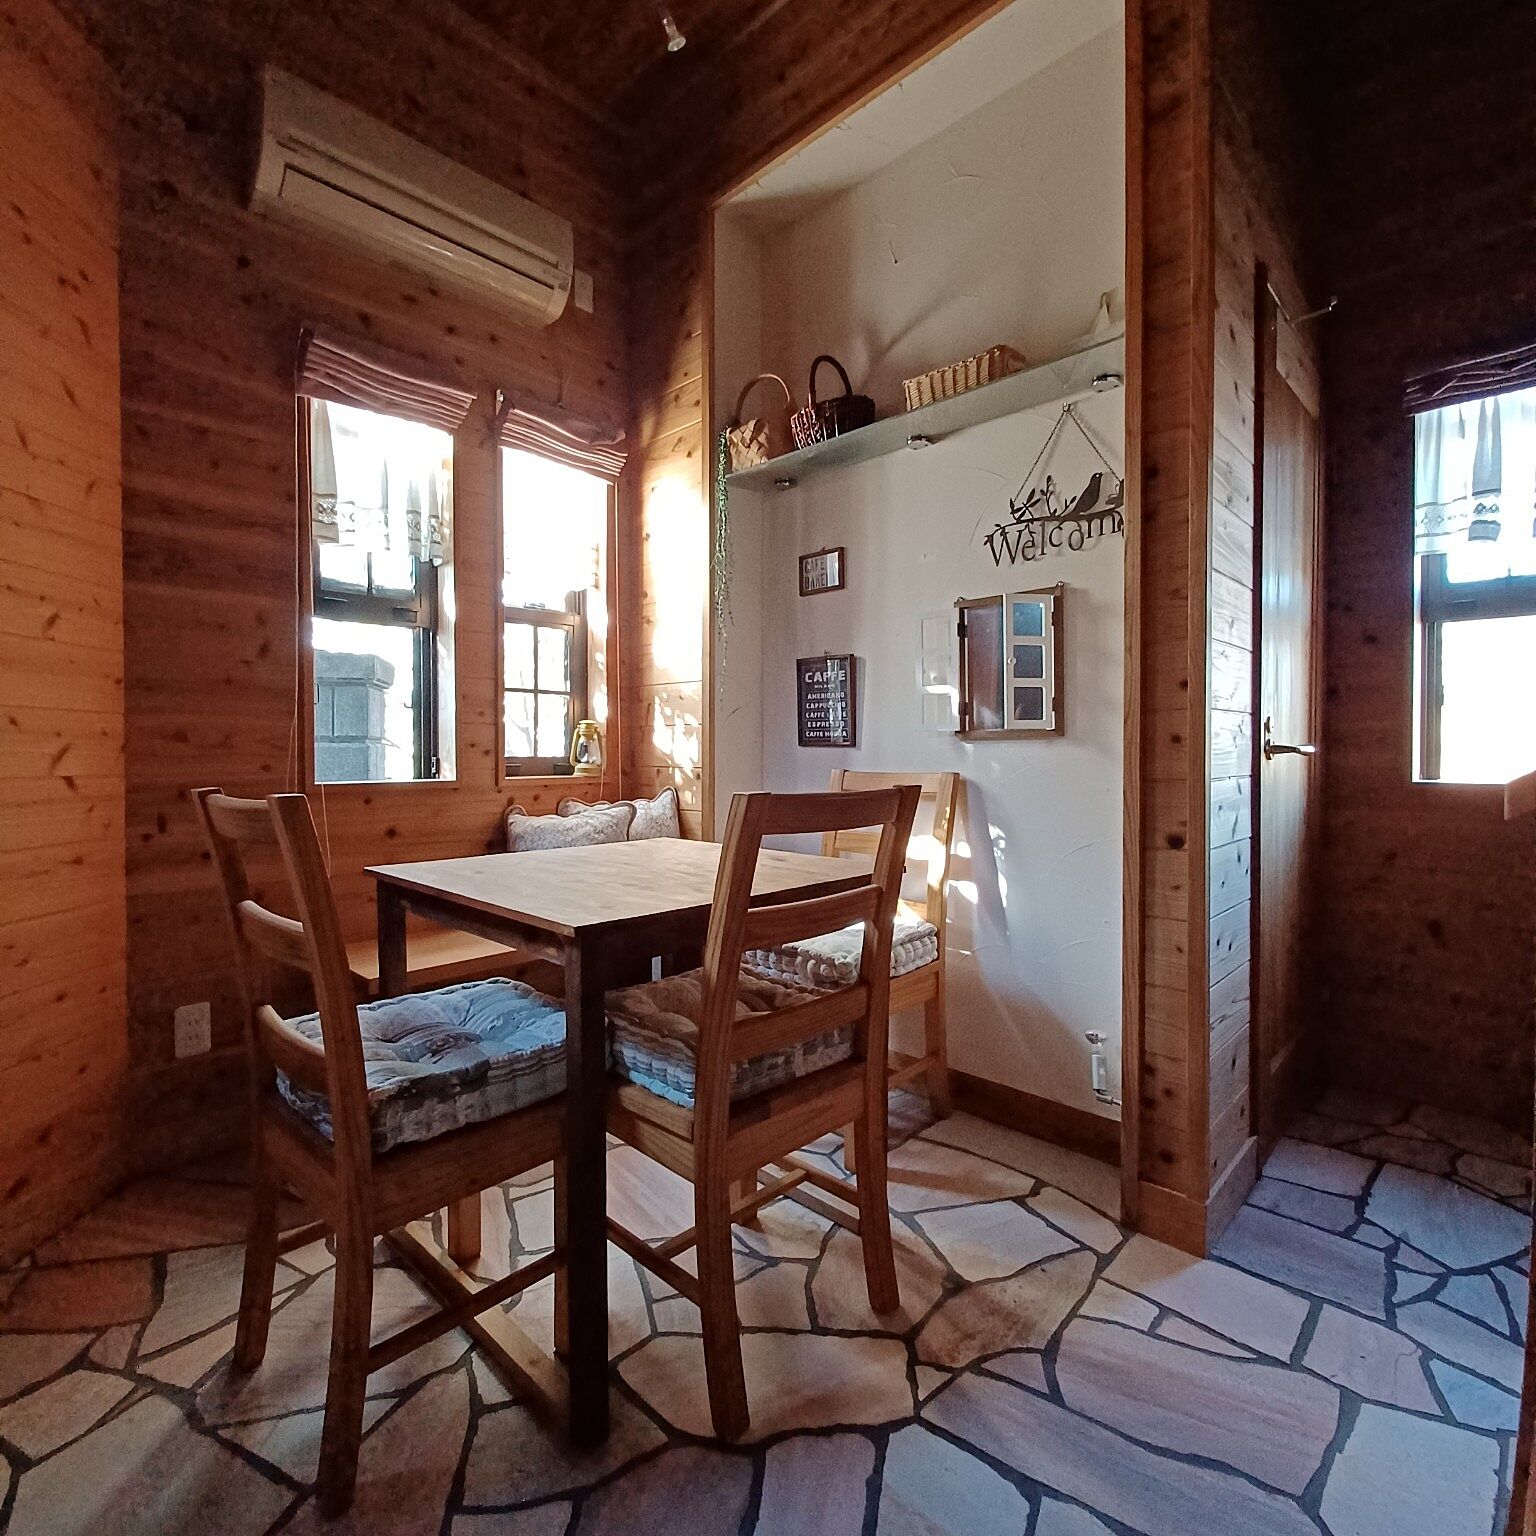 部屋全体が国産杉板に包まれた、カフェ風の癒しスペース。DIYで作り上げた木の温もりとカフェ風インテリアが、心地よいくつろぎを演出しています